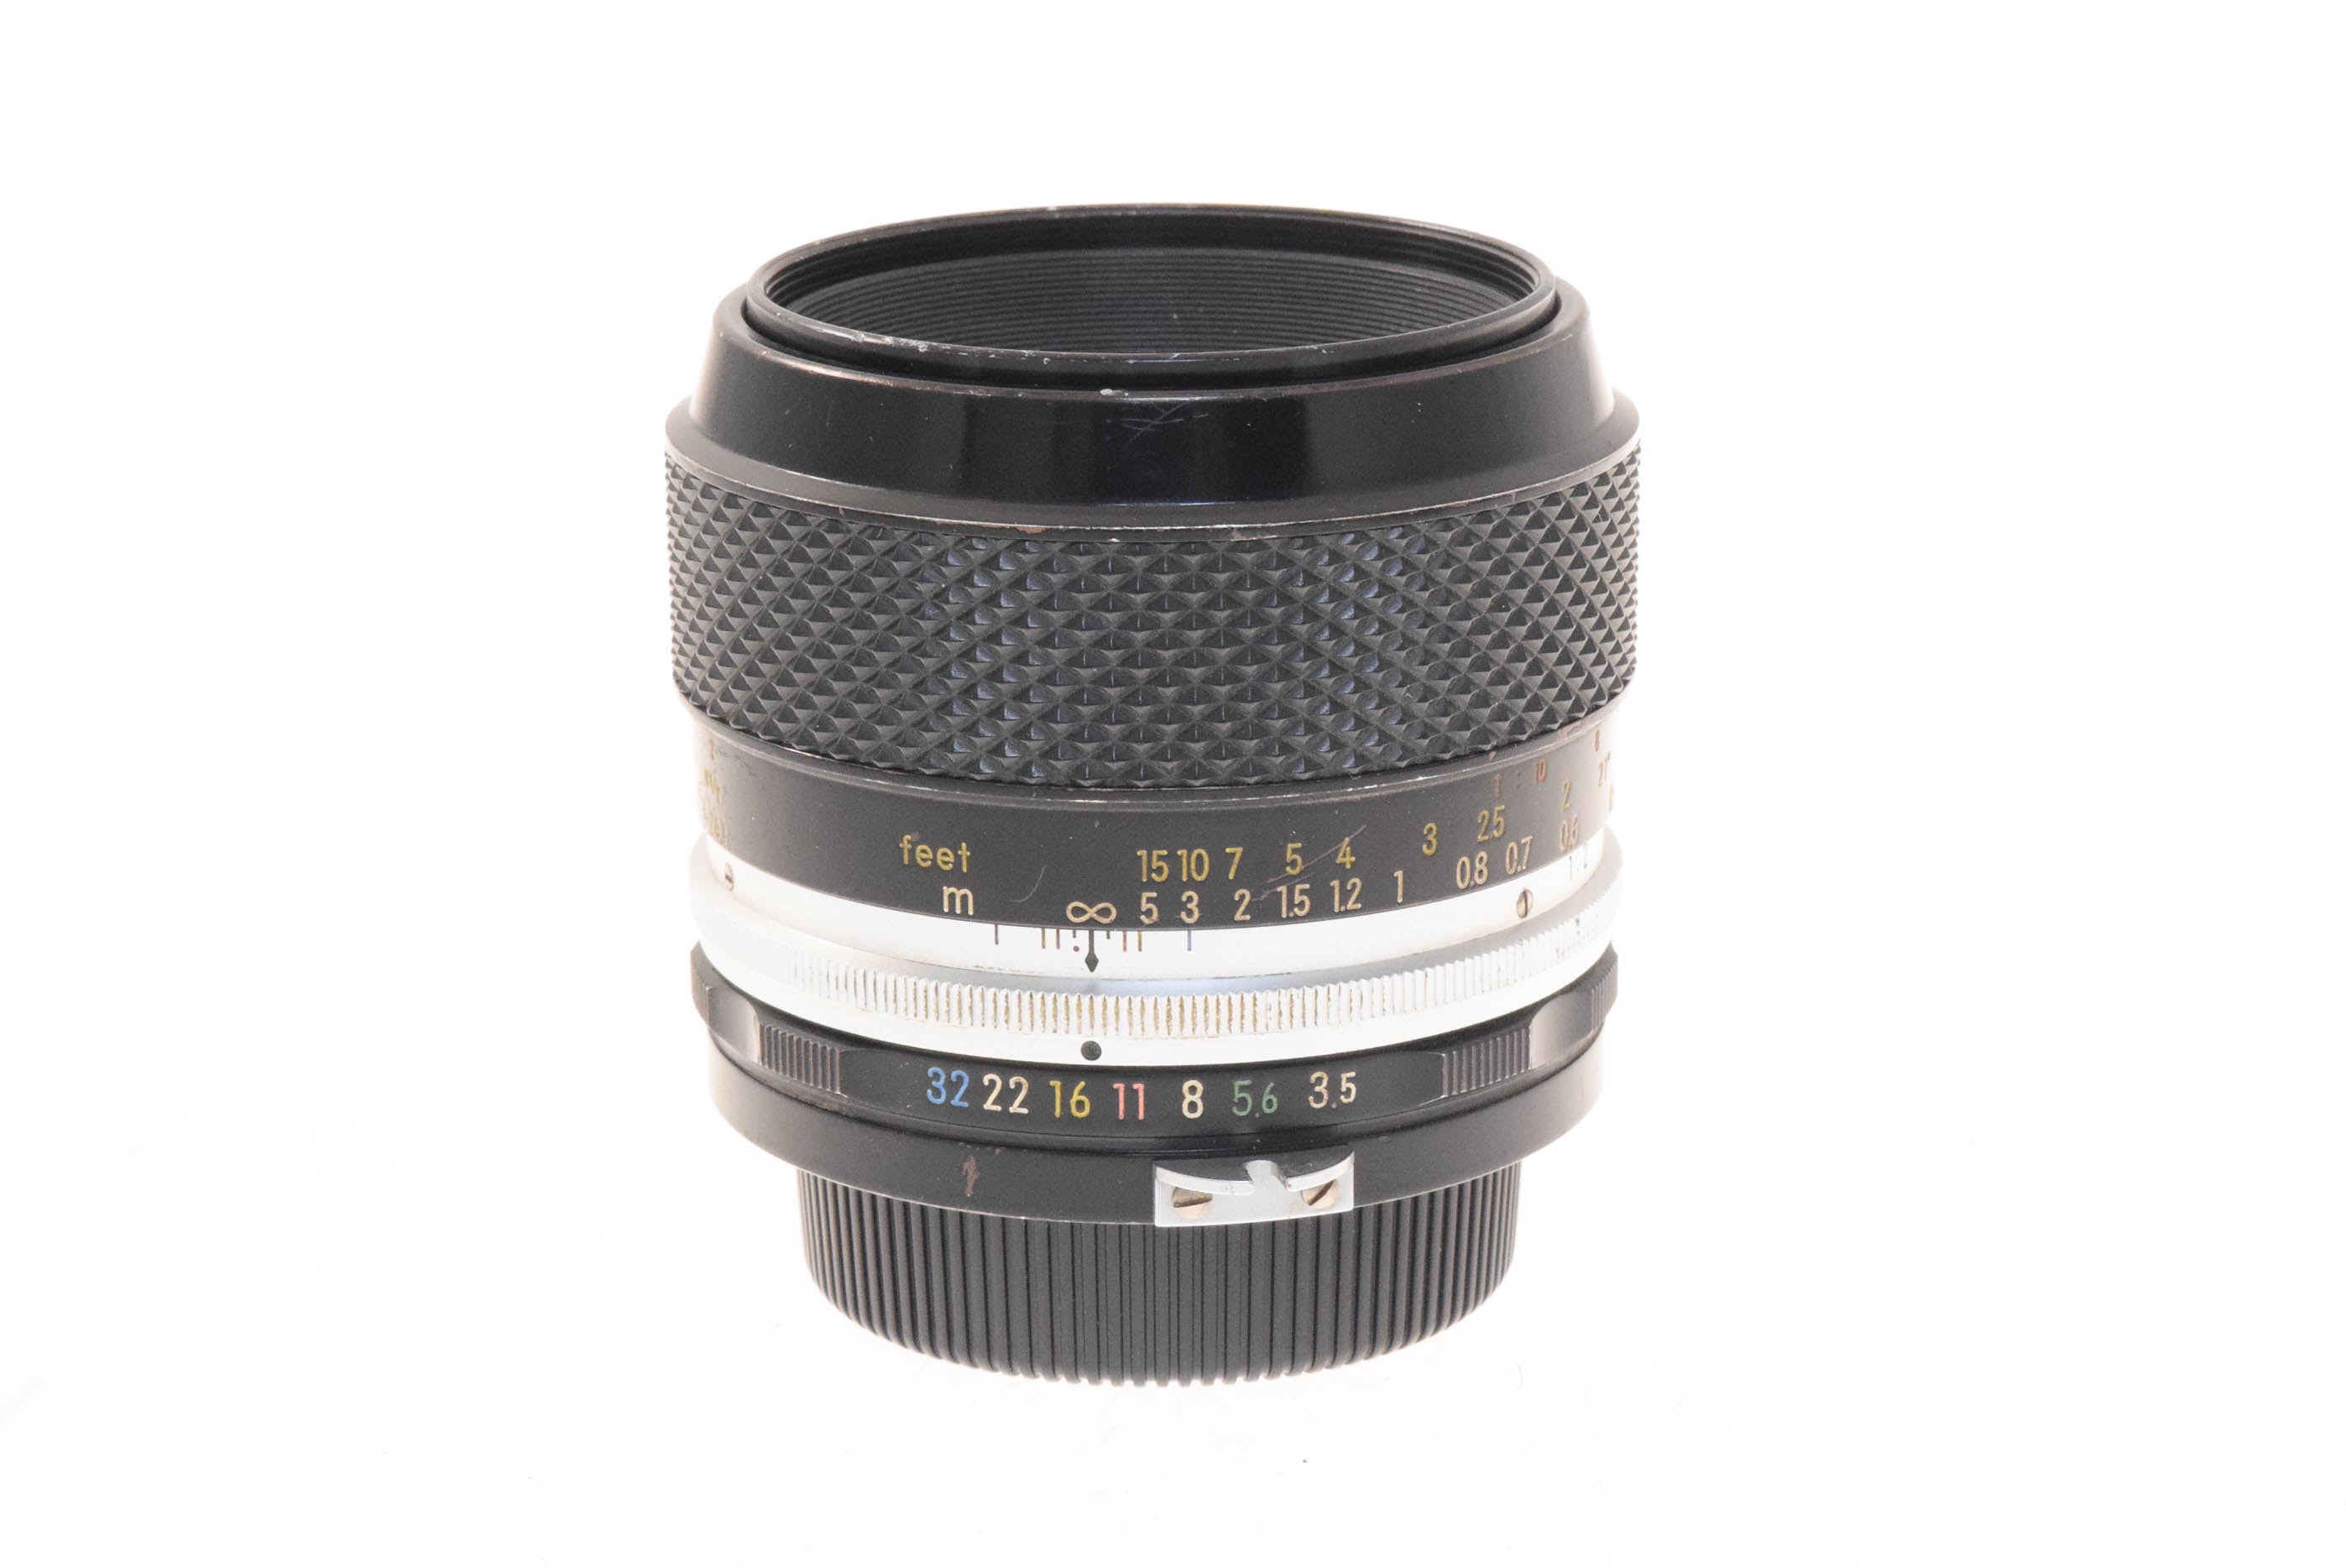 Nikon 55mm f3.5 Micro-Nikkor-P Auto Pre-Ai - Lens – Kamerastore